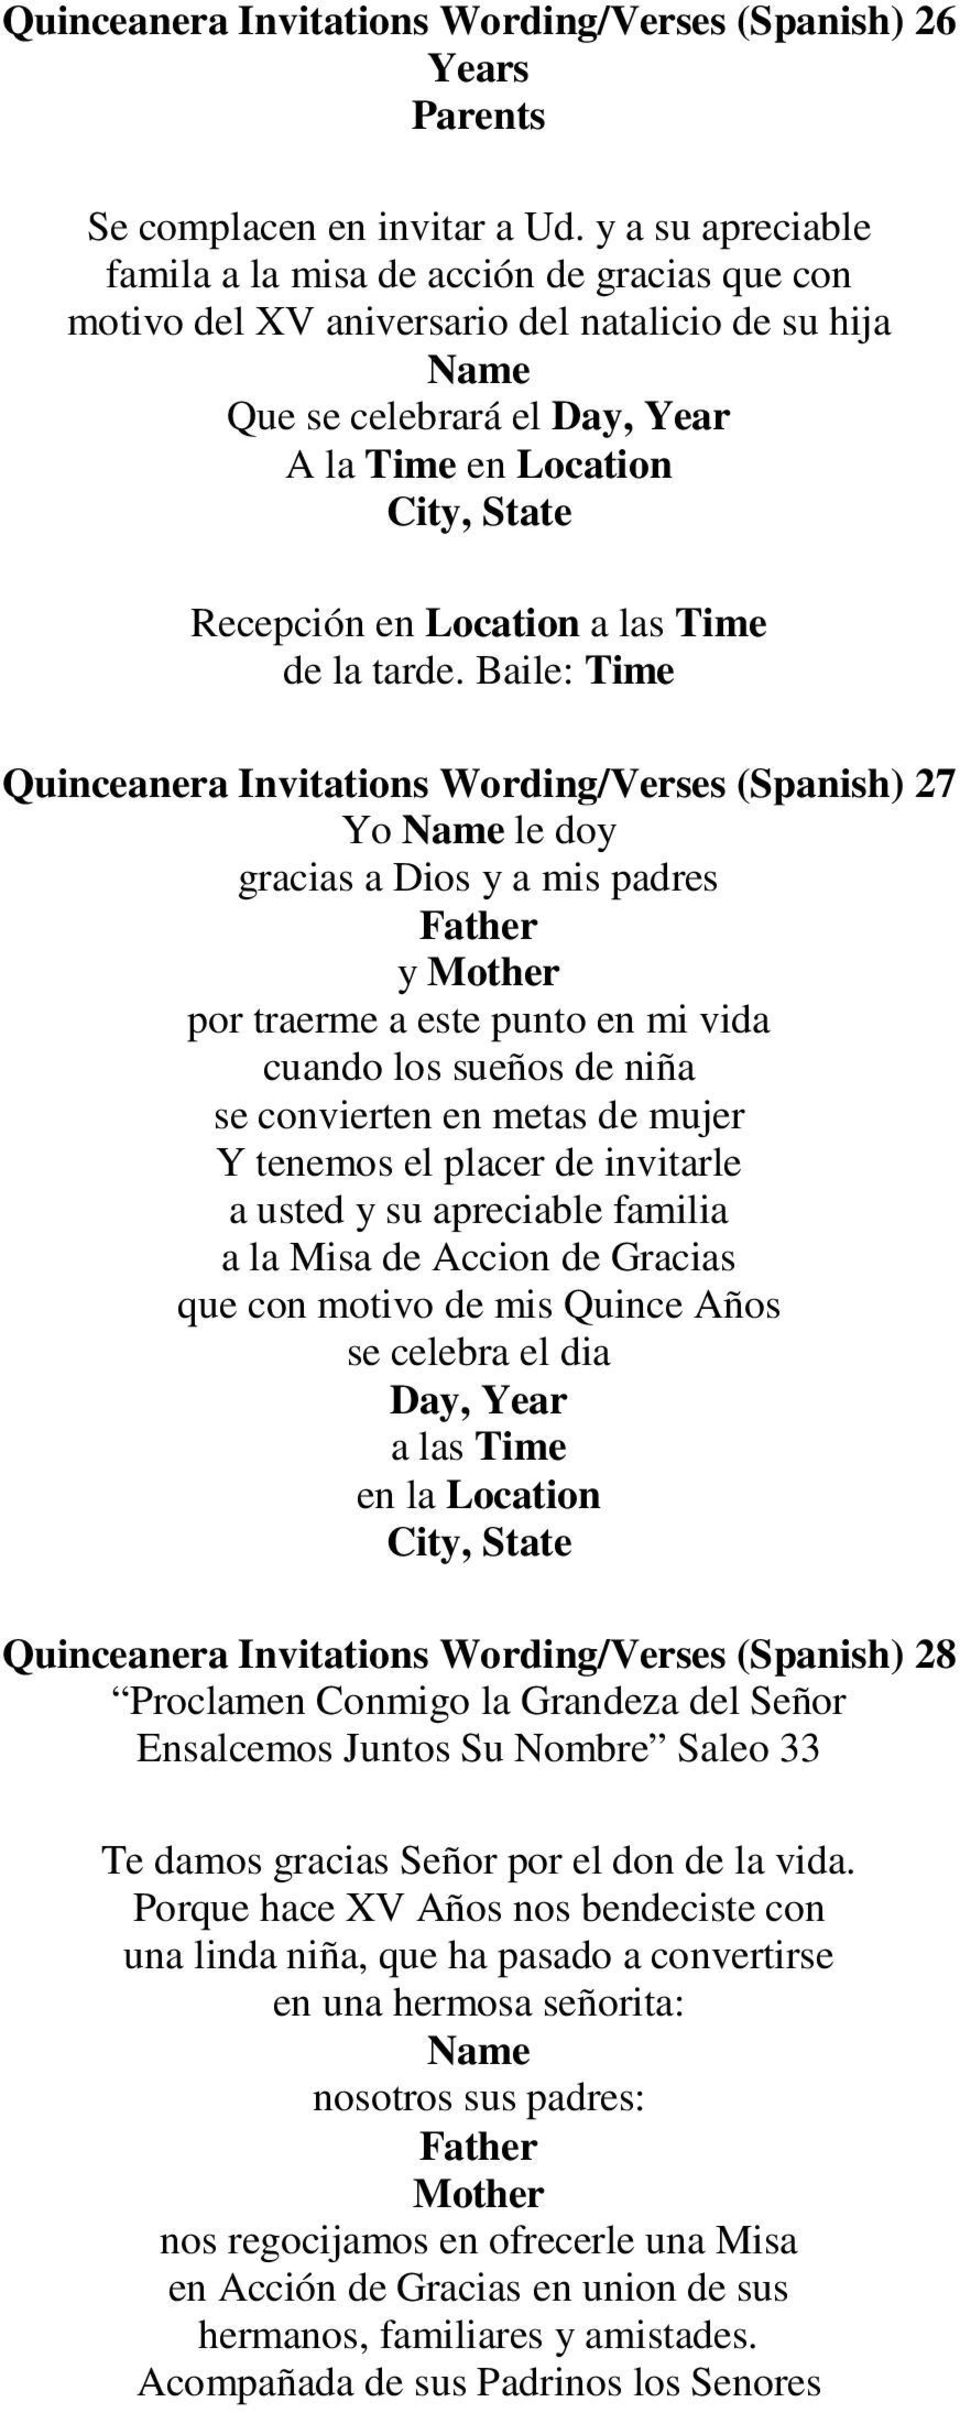 Baile: Quinceanera Invitations Wording/Verses (Spanish) 27 Yo le doy gracias a Dios y a mis padres y por traerme a este punto en mi vida cuando los sueños de niña se convierten en metas de mujer Y